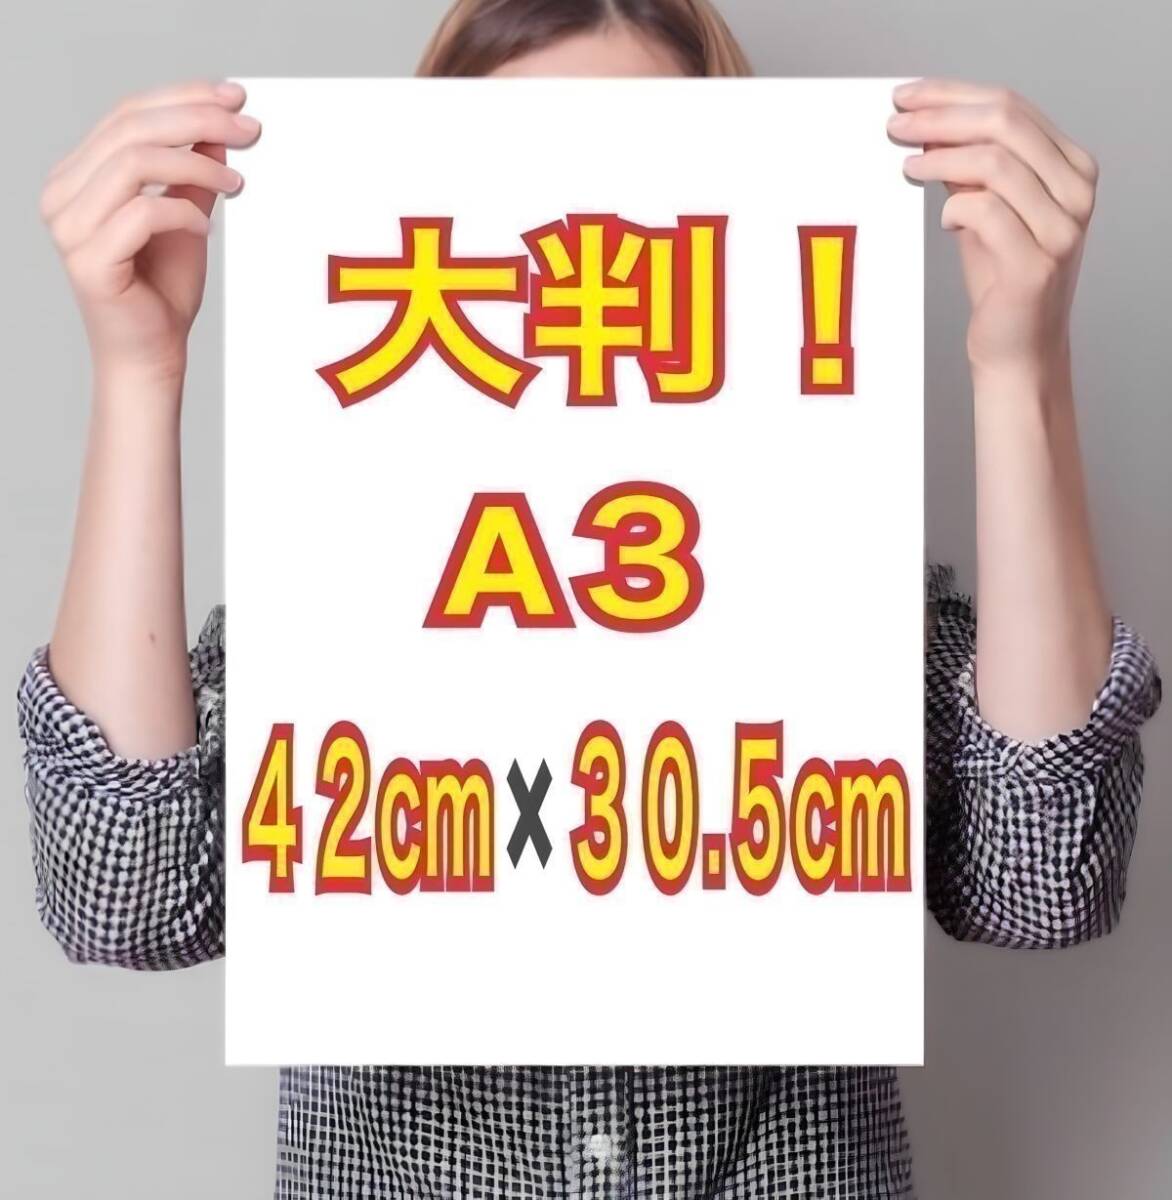  иностранная модель A3 постер супер глянец большой размер 42cm×30.5cm! life photograph *929* Junior идол в натуральную величину способ L